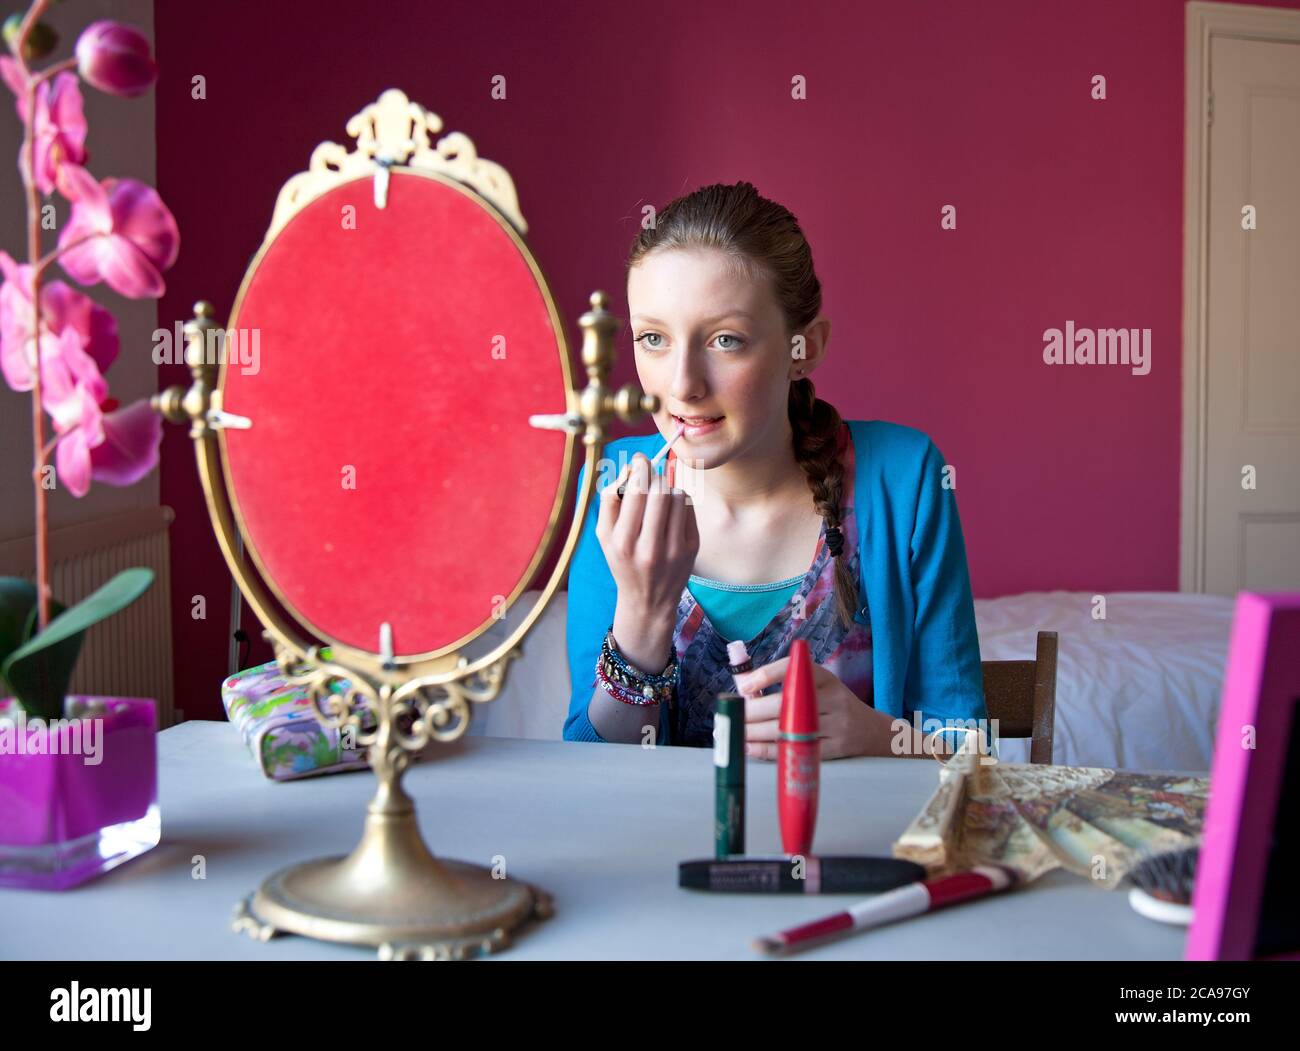 Giovane ragazzina di quattordici anni si siede nella sua camera da letto applicando trucco in uno specchio in preparazione per uscire. Foto Stock